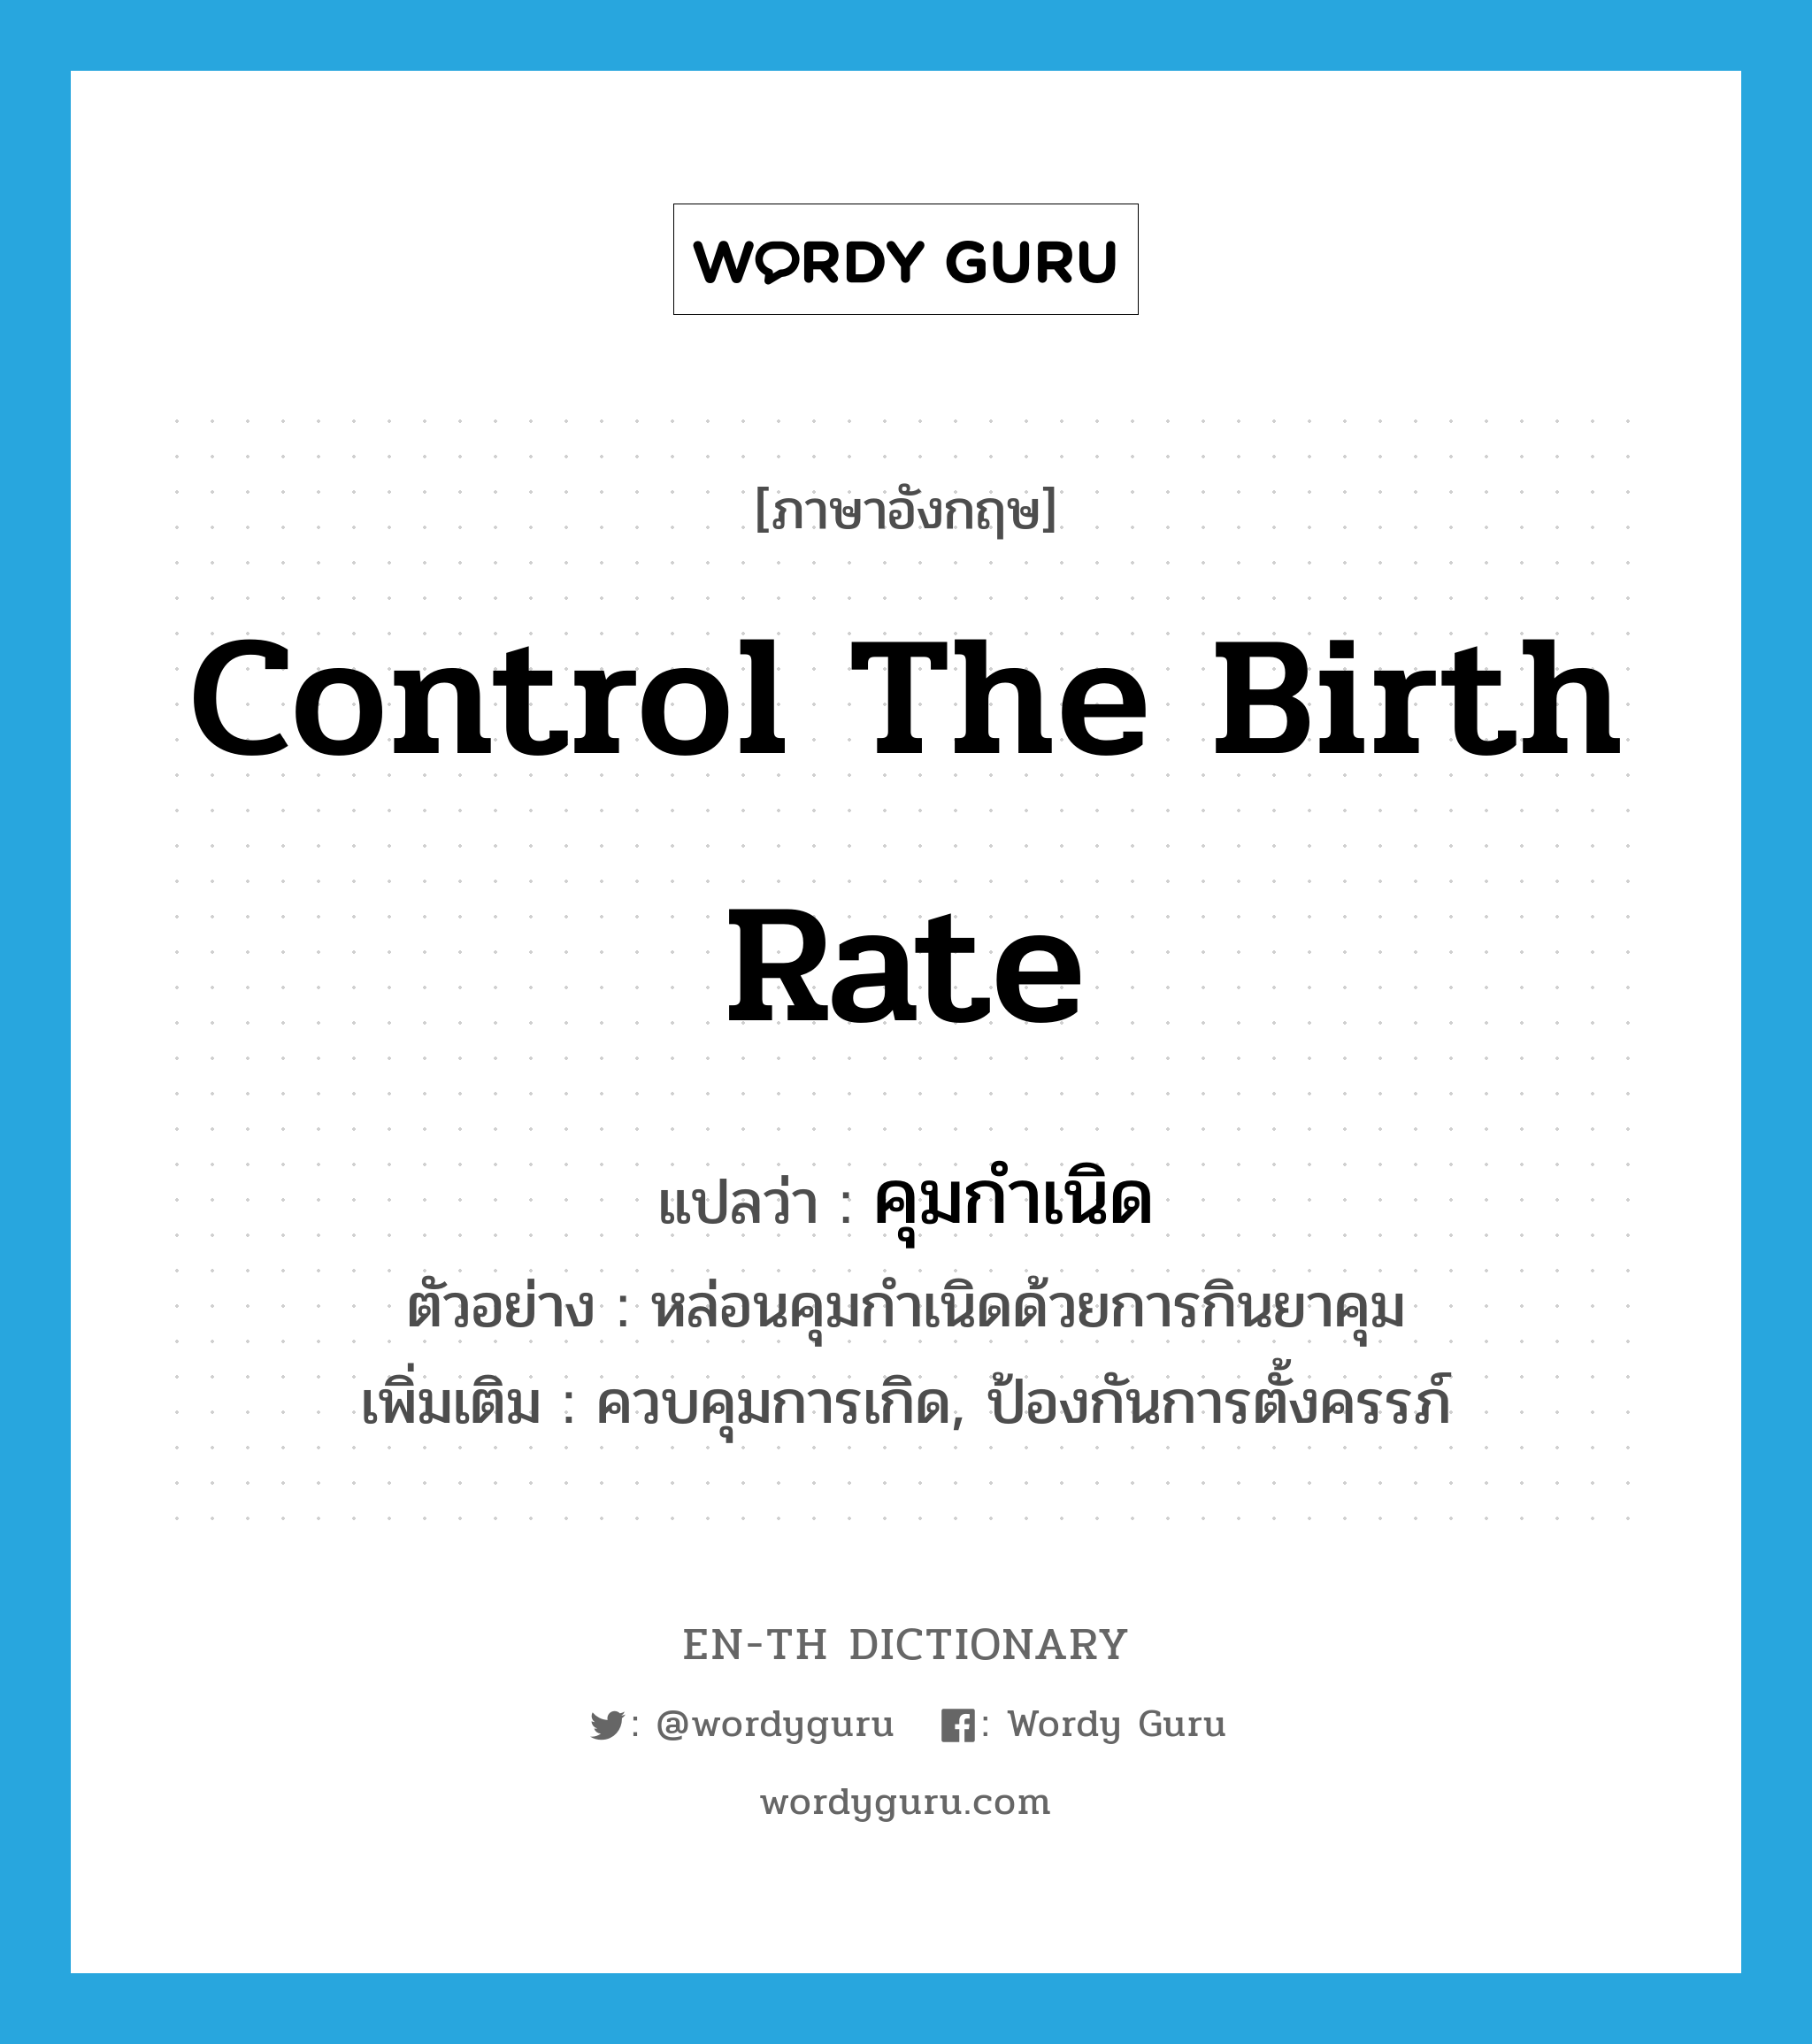 control the birth rate แปลว่า?, คำศัพท์ภาษาอังกฤษ control the birth rate แปลว่า คุมกำเนิด ประเภท V ตัวอย่าง หล่อนคุมกำเนิดด้วยการกินยาคุม เพิ่มเติม ควบคุมการเกิด, ป้องกันการตั้งครรภ์ หมวด V